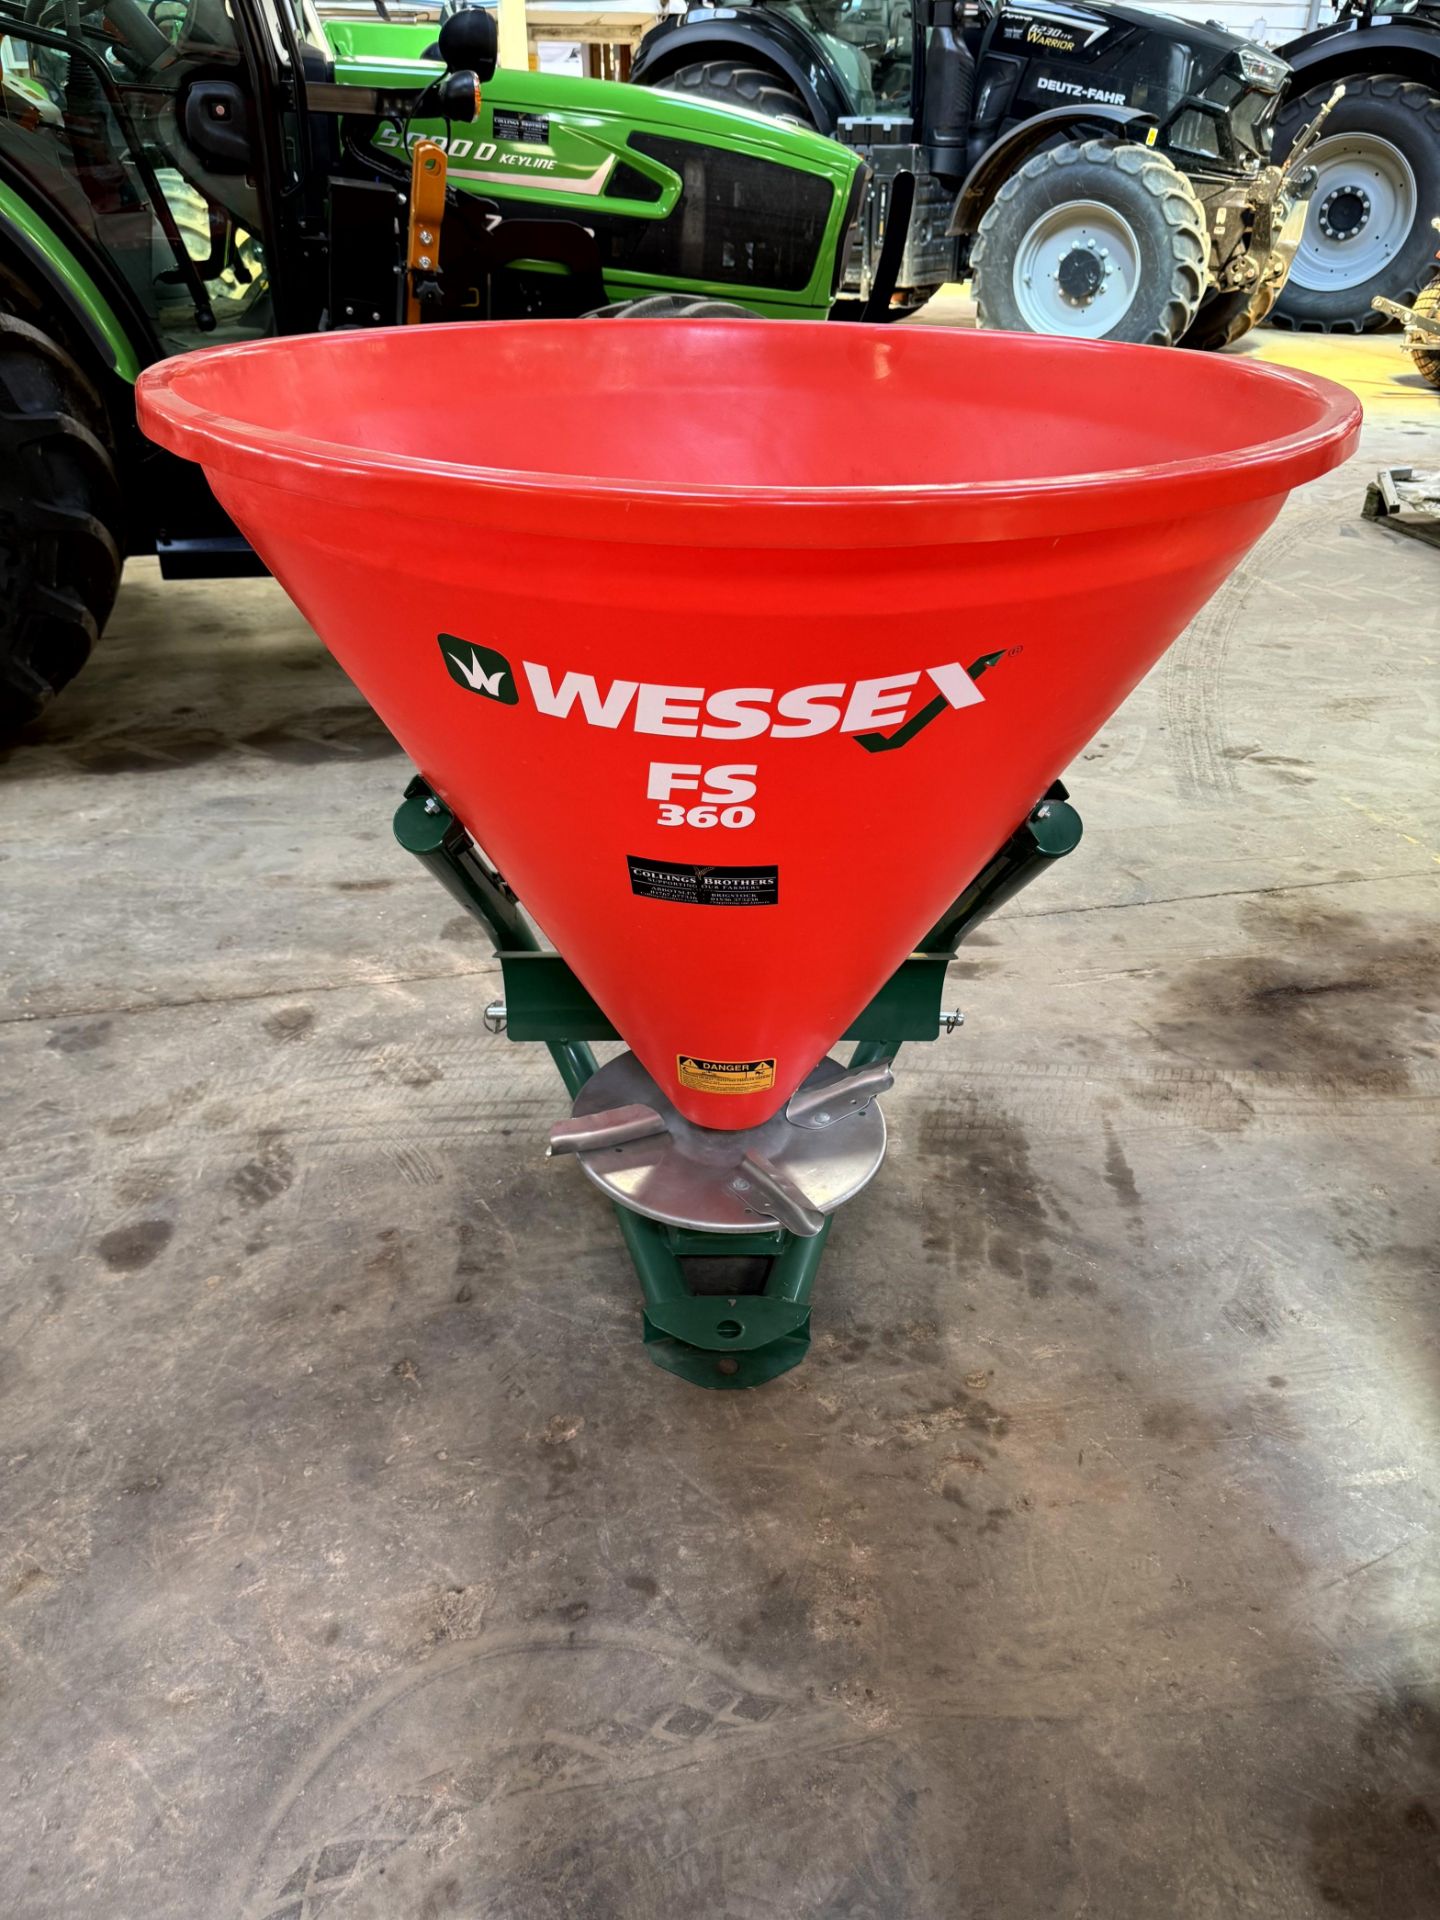 1: Wessex FS360, Fertiliser Spreader, Serial Number: 0434077